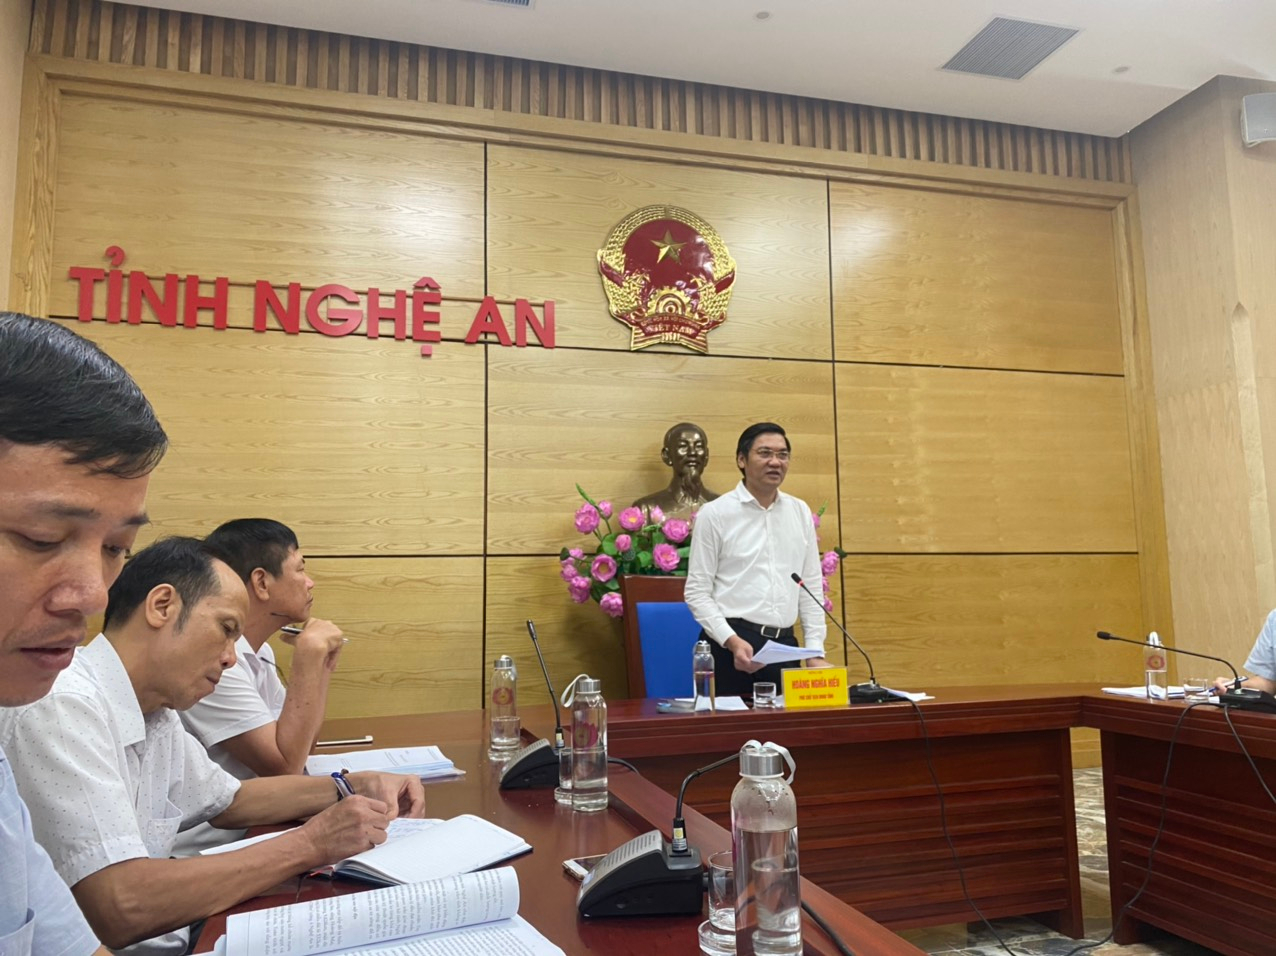 Dự thảo: Đề án phát triển nuôi trồng thủy sản đặc sản nội địa trên địa bàn tỉnh Nghệ An giai đoạn 2020-2025.